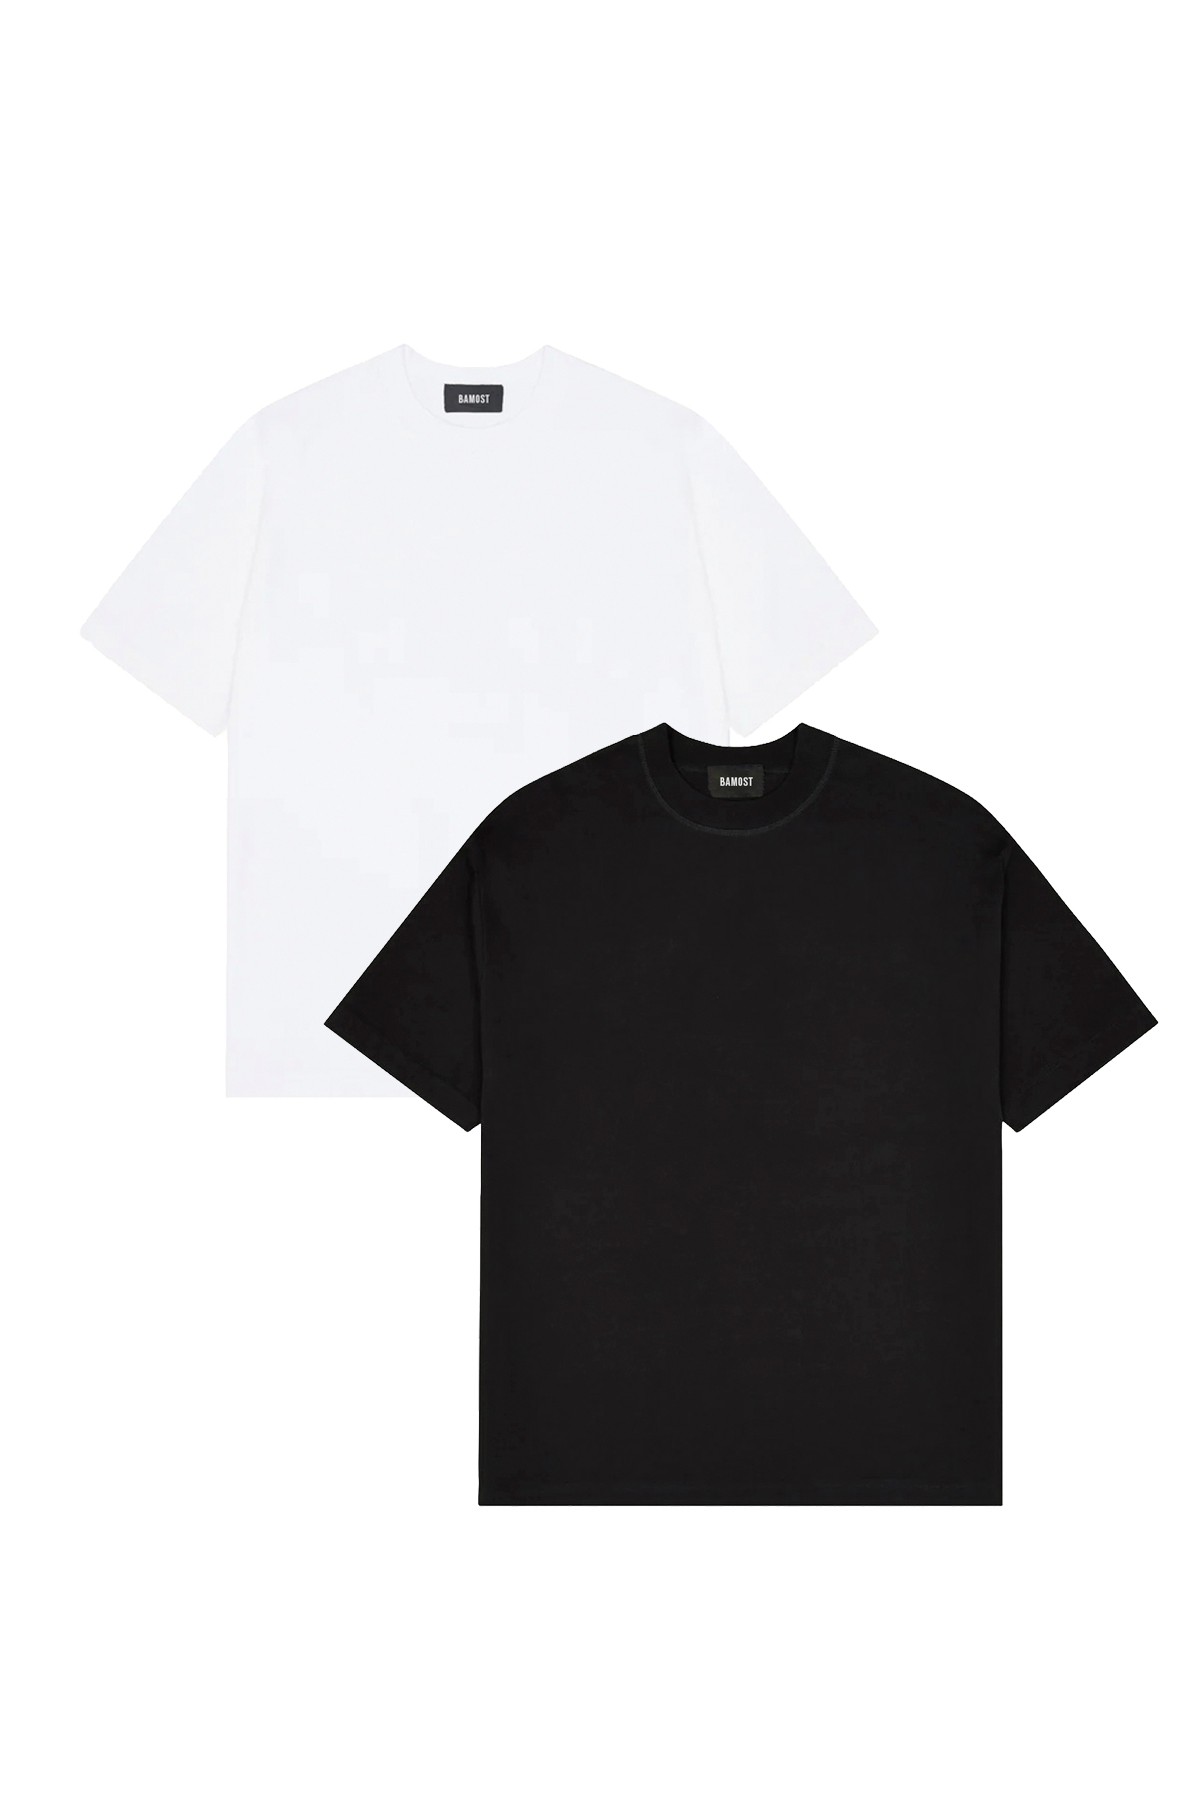 Boris - 2'li Basic T-shirt Paketi - Siyah, Beyaz